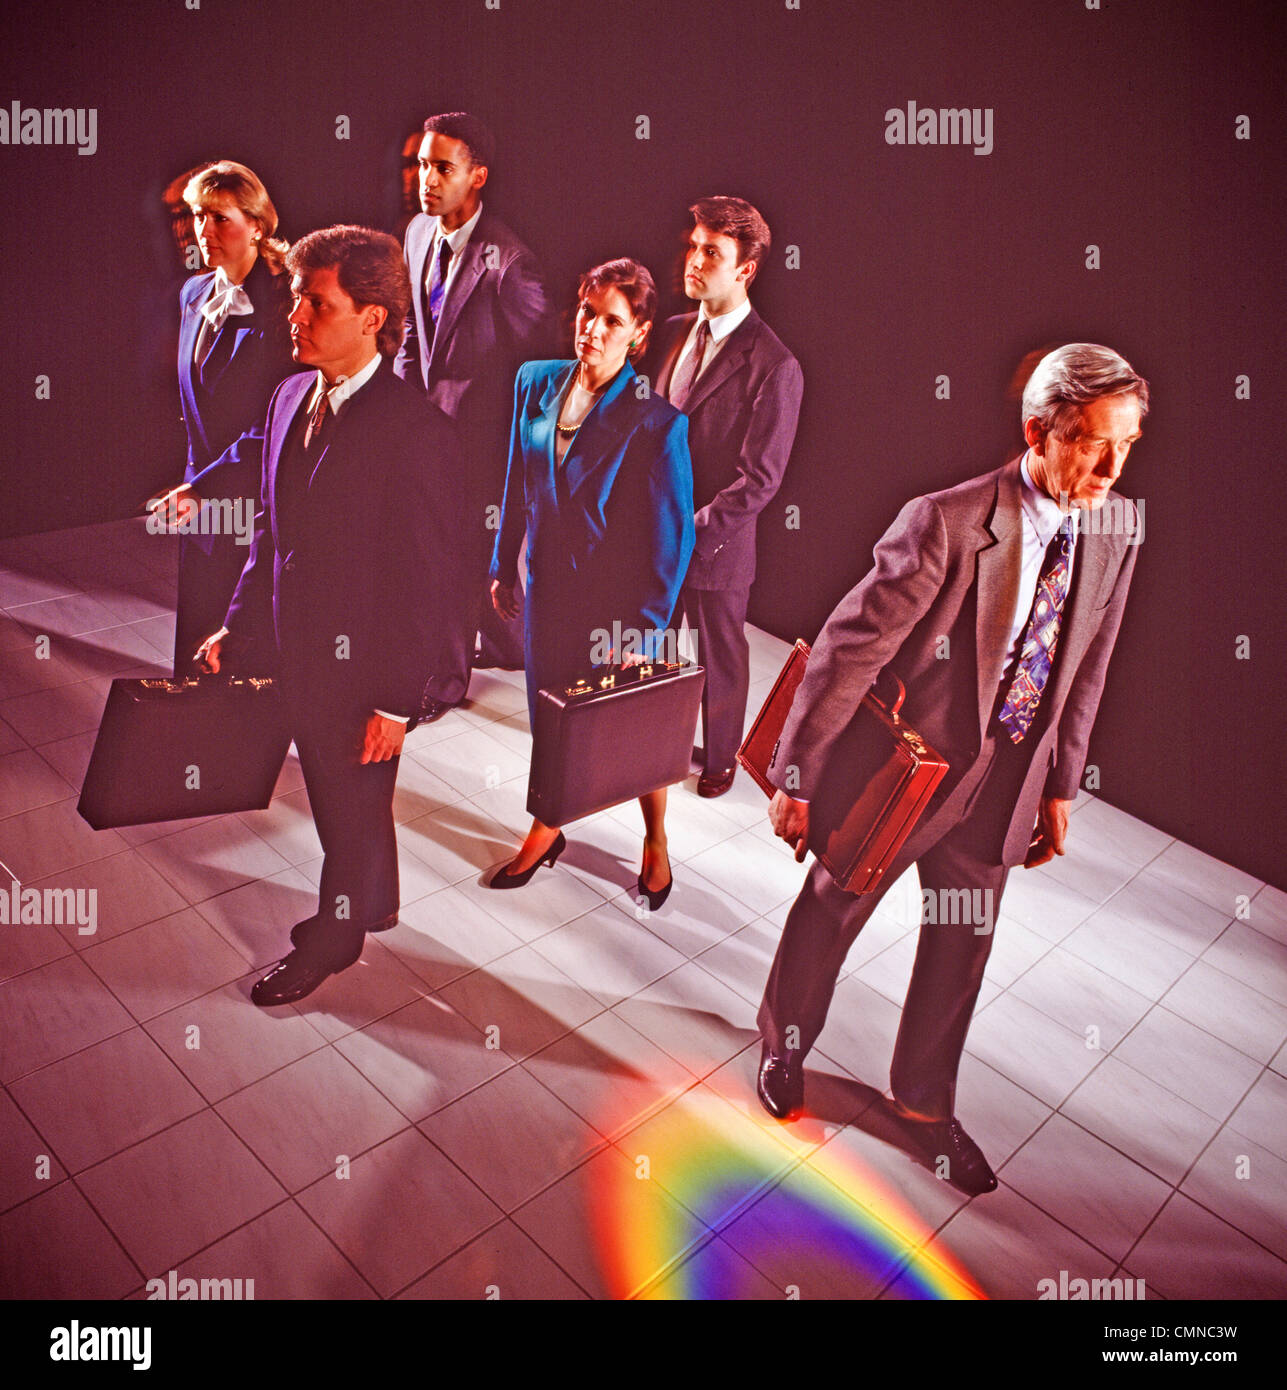 Eine Führungskraft verlässt die Gruppe für bessere Möglichkeiten, durch Rainboe Spektrum Farben symbolisiert. Stockfoto